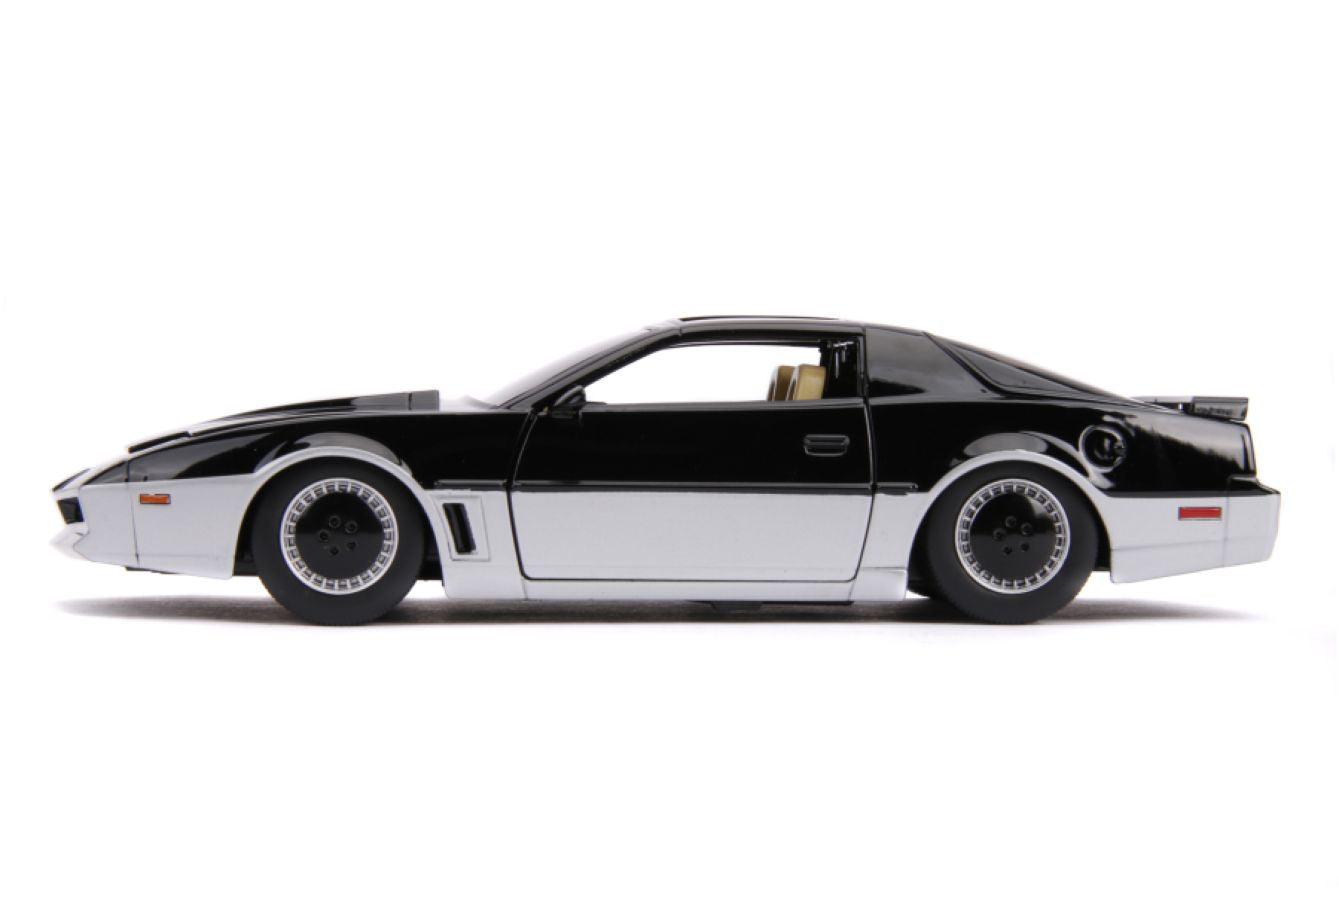 JAD31115 Knight Rider - K.A.R.R. 1982 Pontiac Firebird 1:24 Scale Hollywood Ride - Jada Toys - Titan Pop Culture